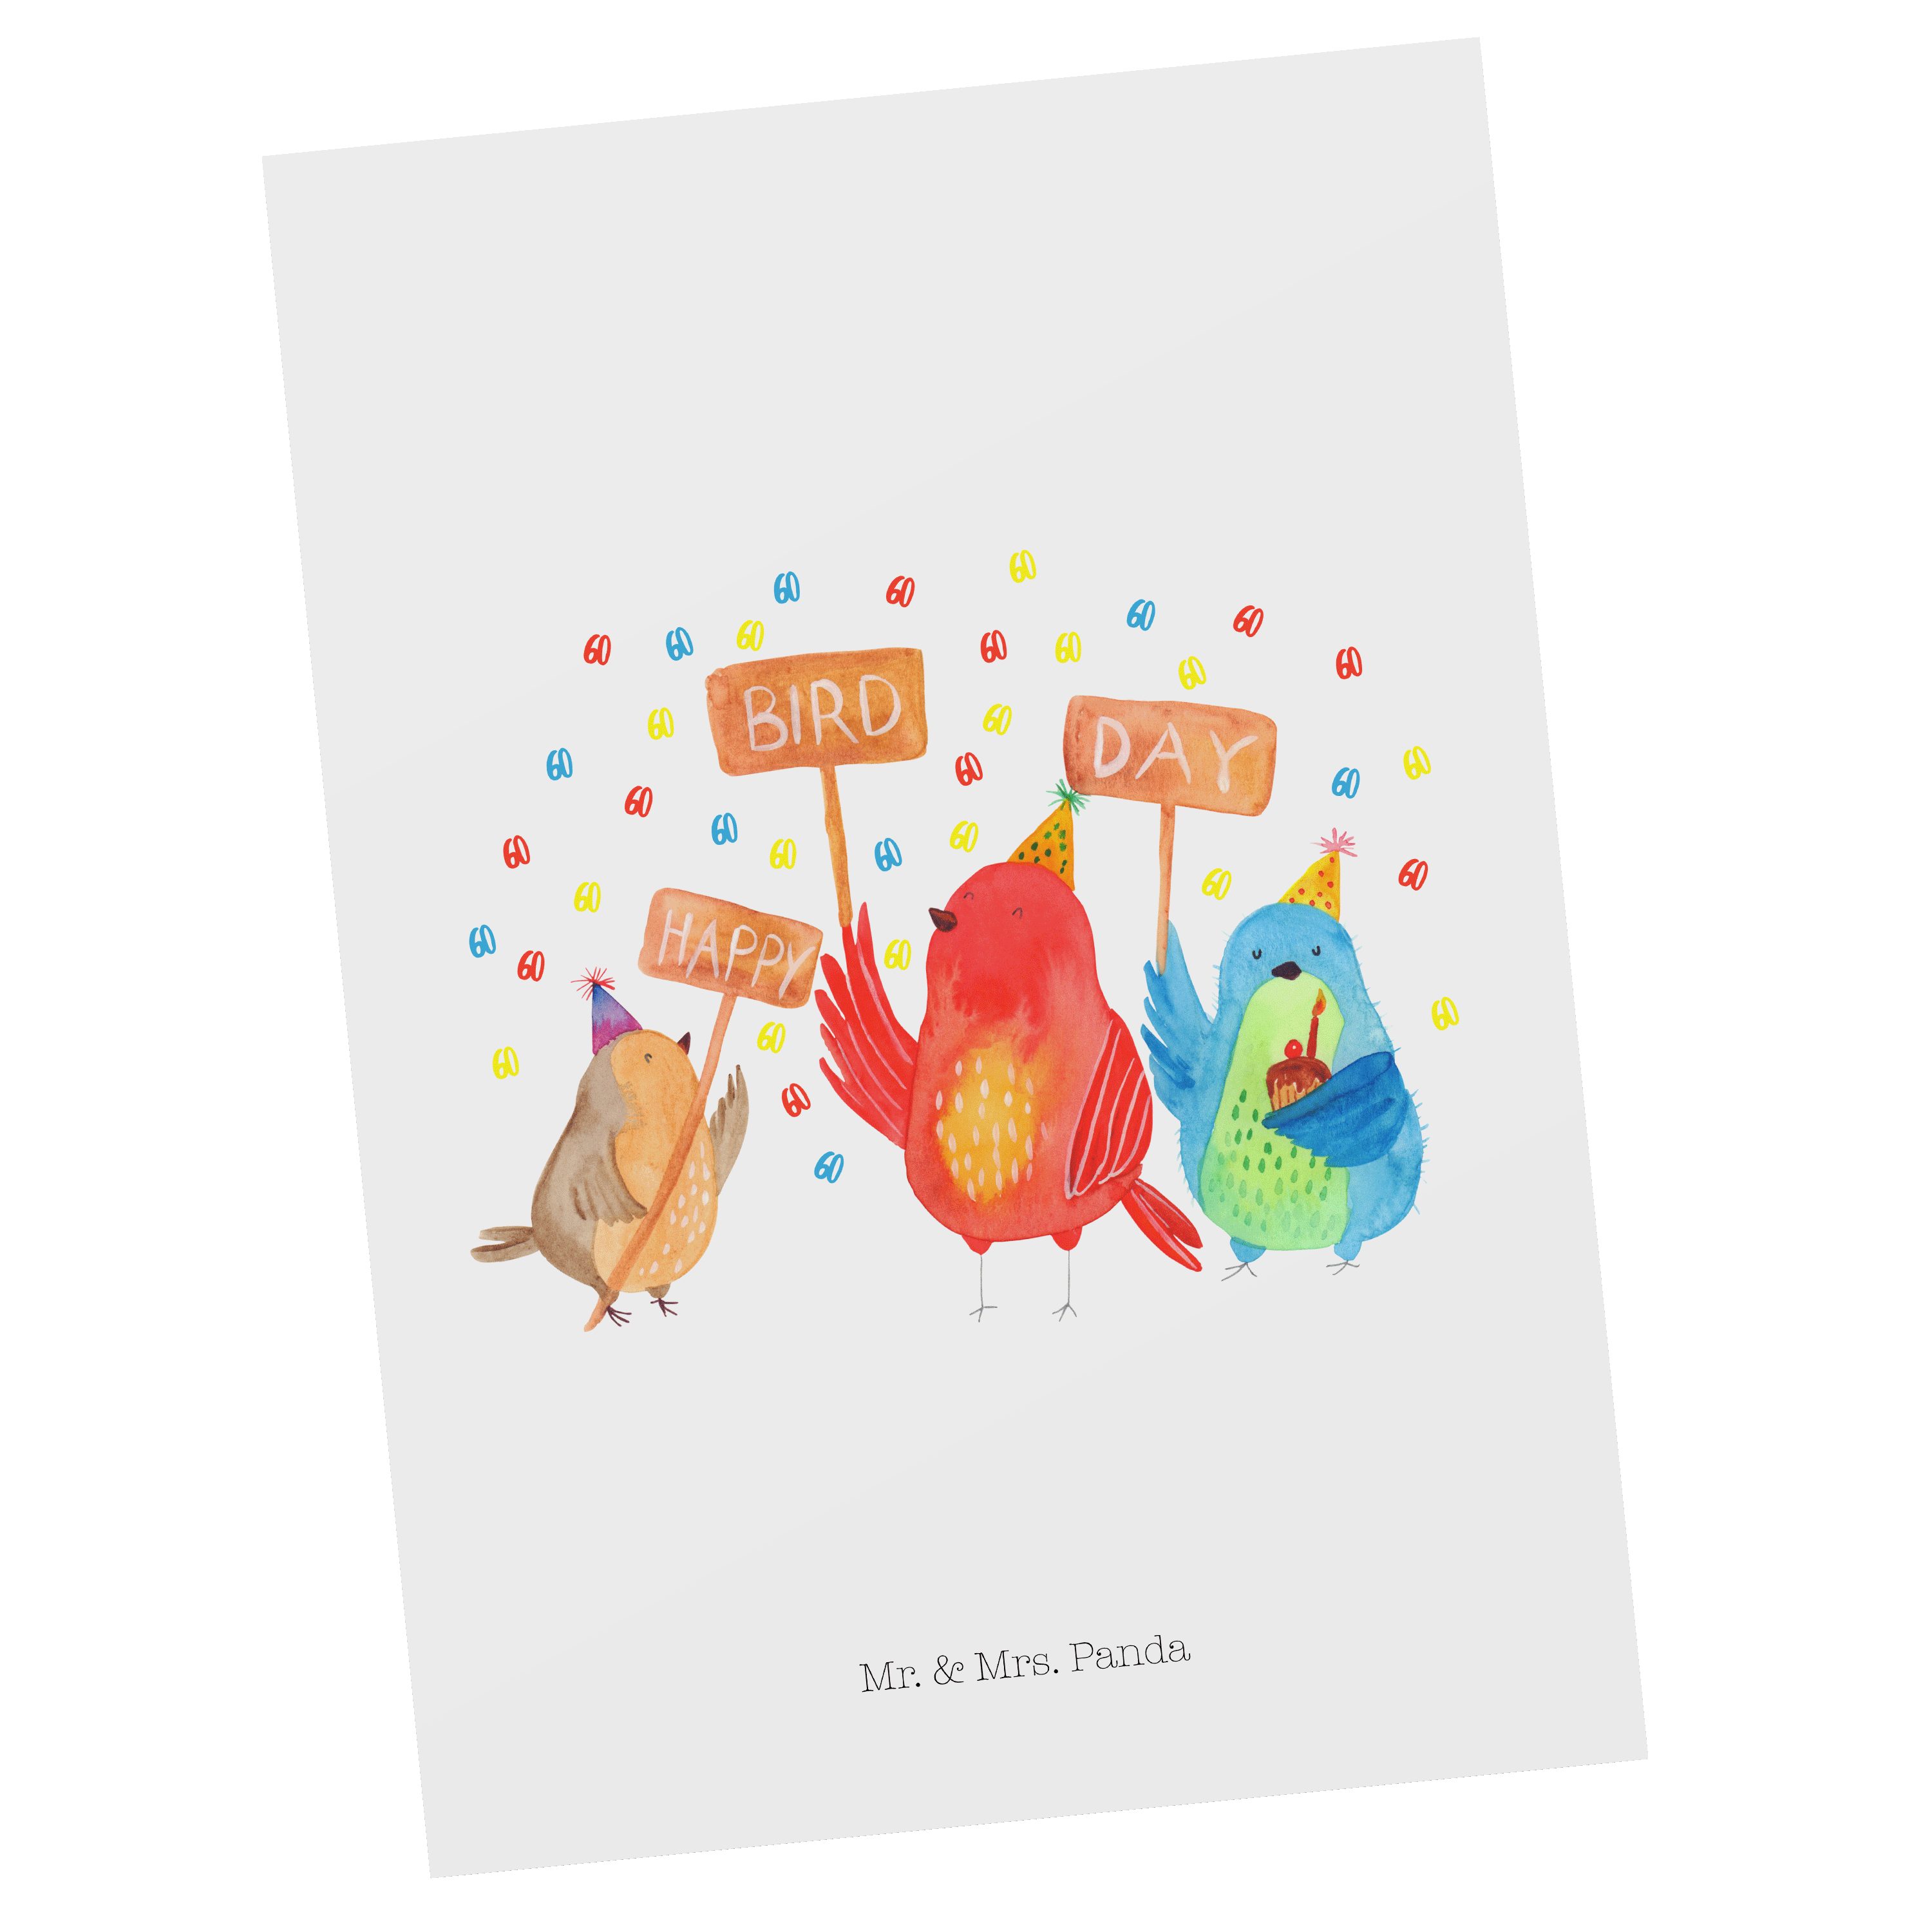 Mr. & Mrs. Panda Postkarte 60. Geburtstag Happy Bird Day - Weiß - Geschenk, Karte, Grußkarte, Ei